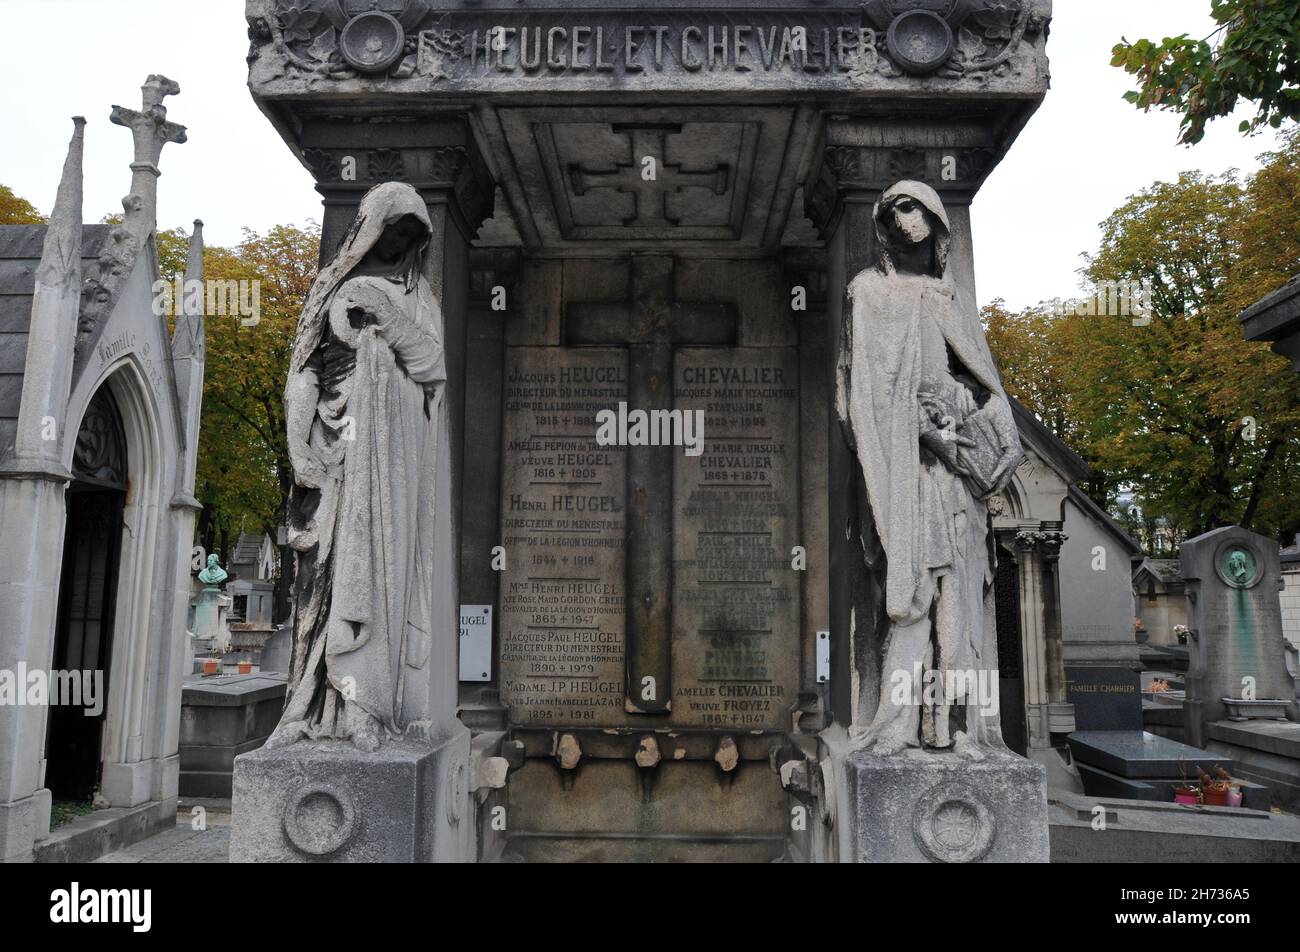 Die Statuen zweier getarnter Figuren stehen am Grab der Familie Heugel und Chevalier auf dem historischen Friedhof Passy (Cimetière de Passy) in Paris. Stockfoto